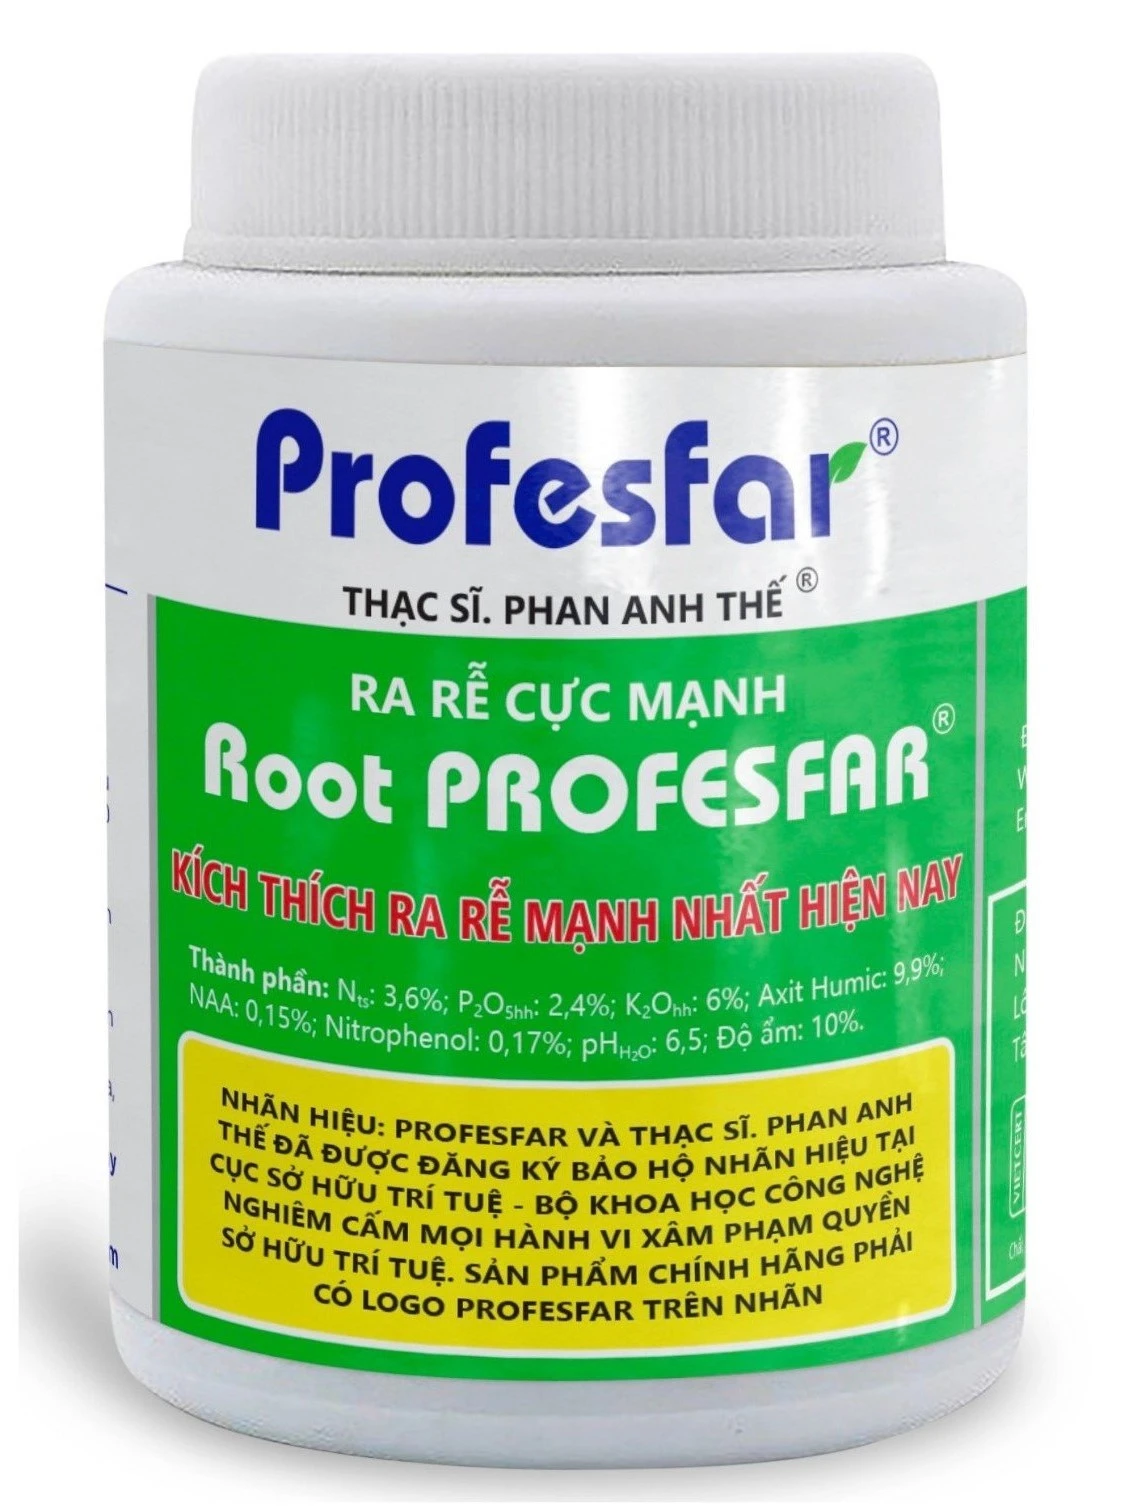 Root PROFESFAR®